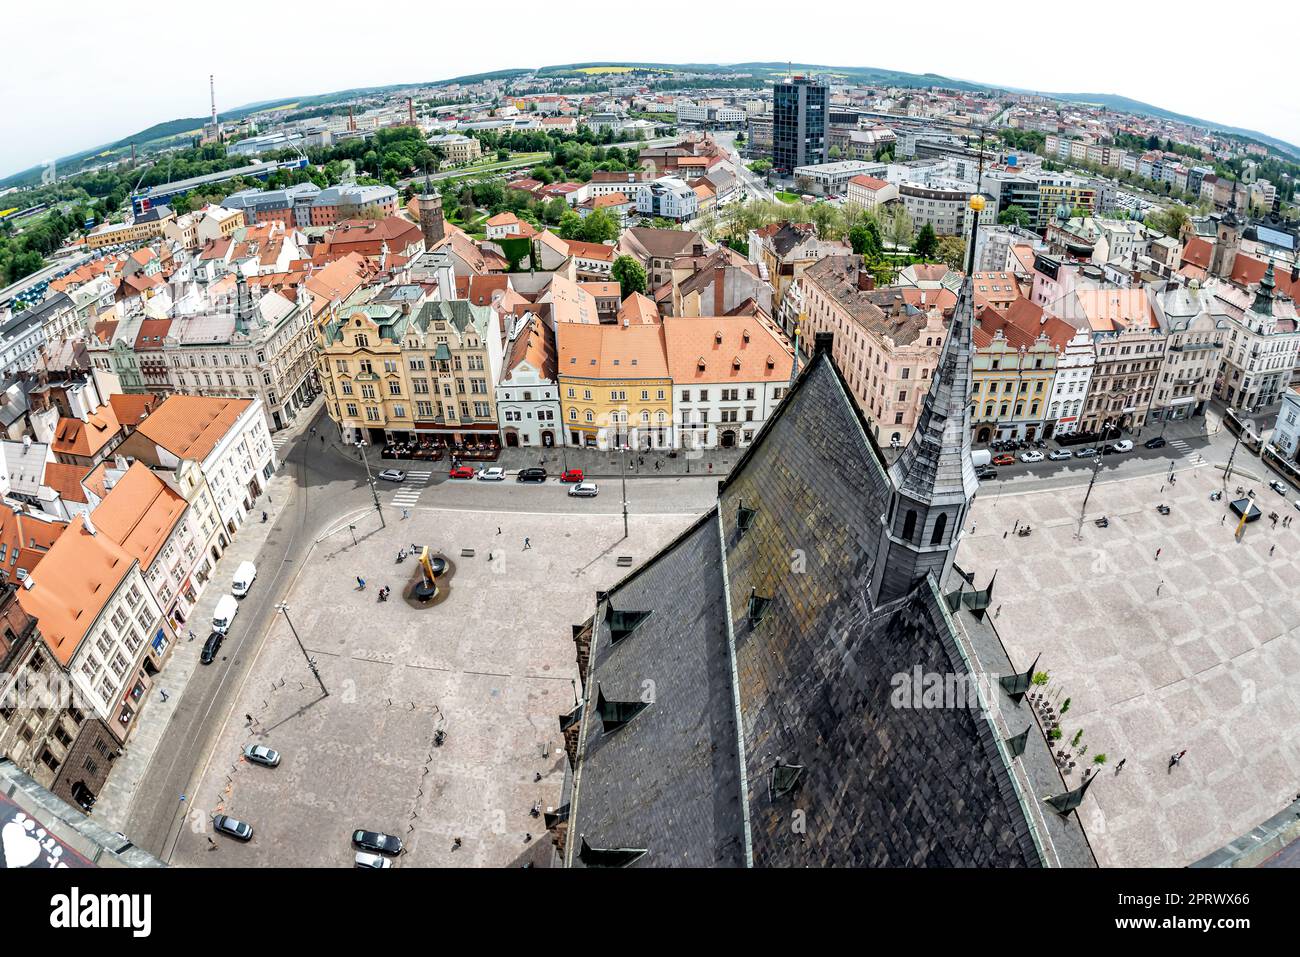 Vue depuis la cathédrale Saint-Bartholomew sur la place de la République. Pilsen (Plzen), République tchèque Banque D'Images